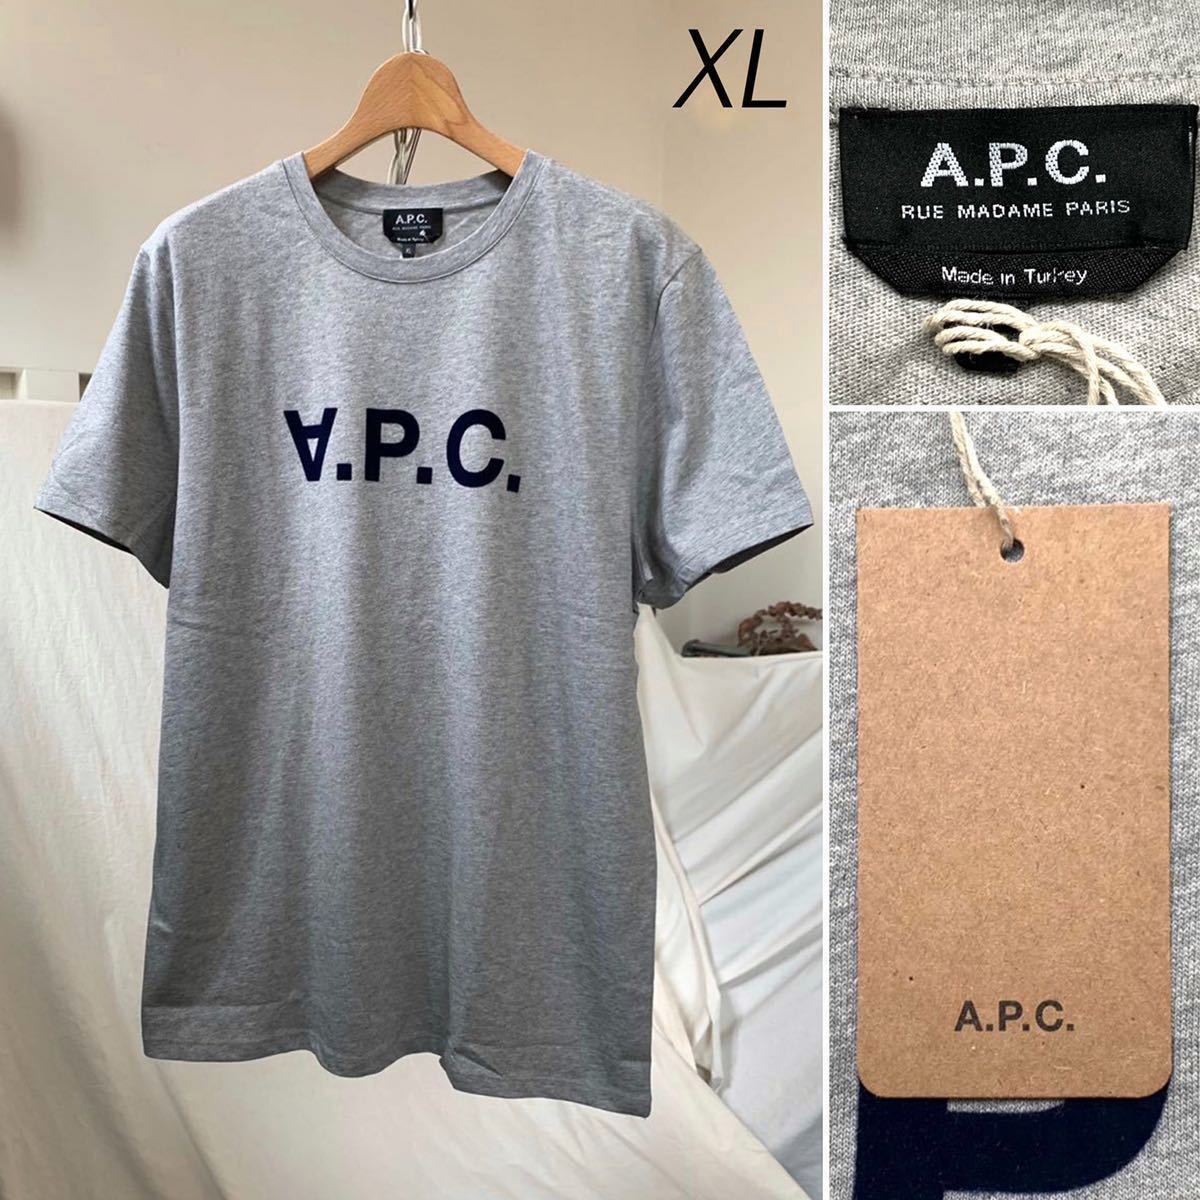 XL 新品 A.P.C. アーペーセー V.P.C. ロゴ Tシャツ メンズ APC VPC フロッキーロゴ 杢グレー 希少サイズ